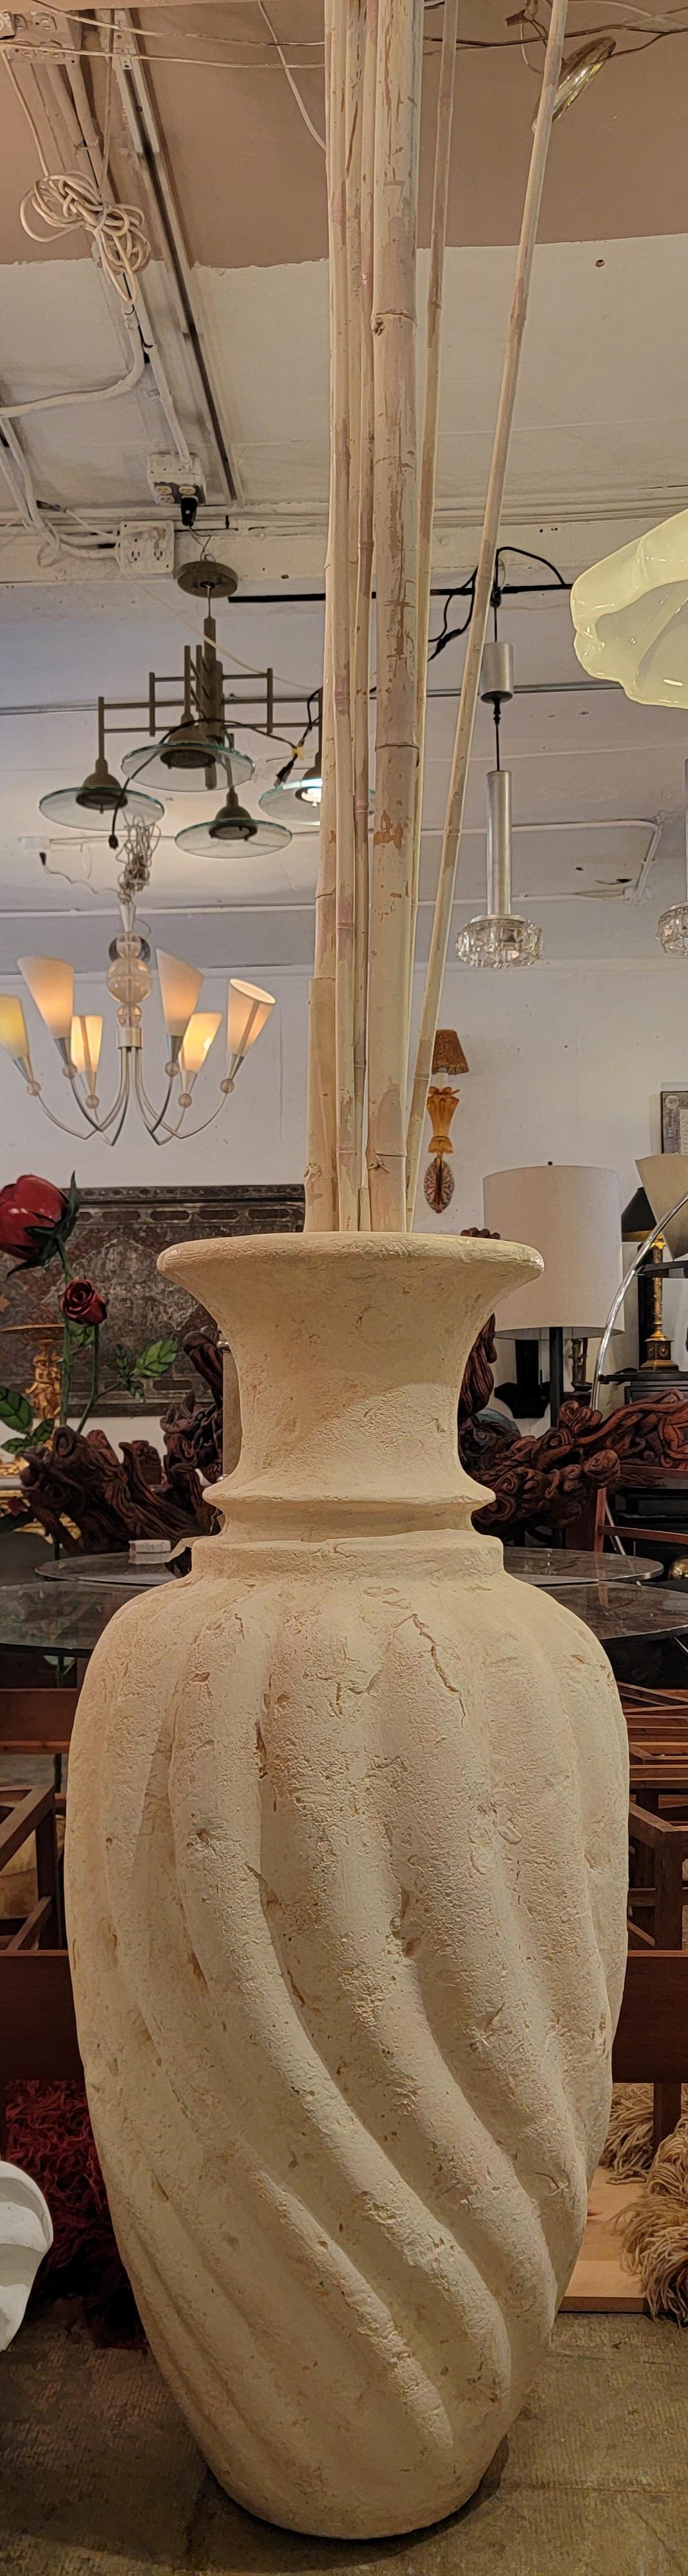 60er Jahre Französisch Monumental Ton bemalt Vase. Bambus ist für den Versand abnehmbar. Twirl Design.
Vase misst 20Durchmesser x 47,5 hoch
Die längsten Bambusstäbe messen ca. 103 Zoll
